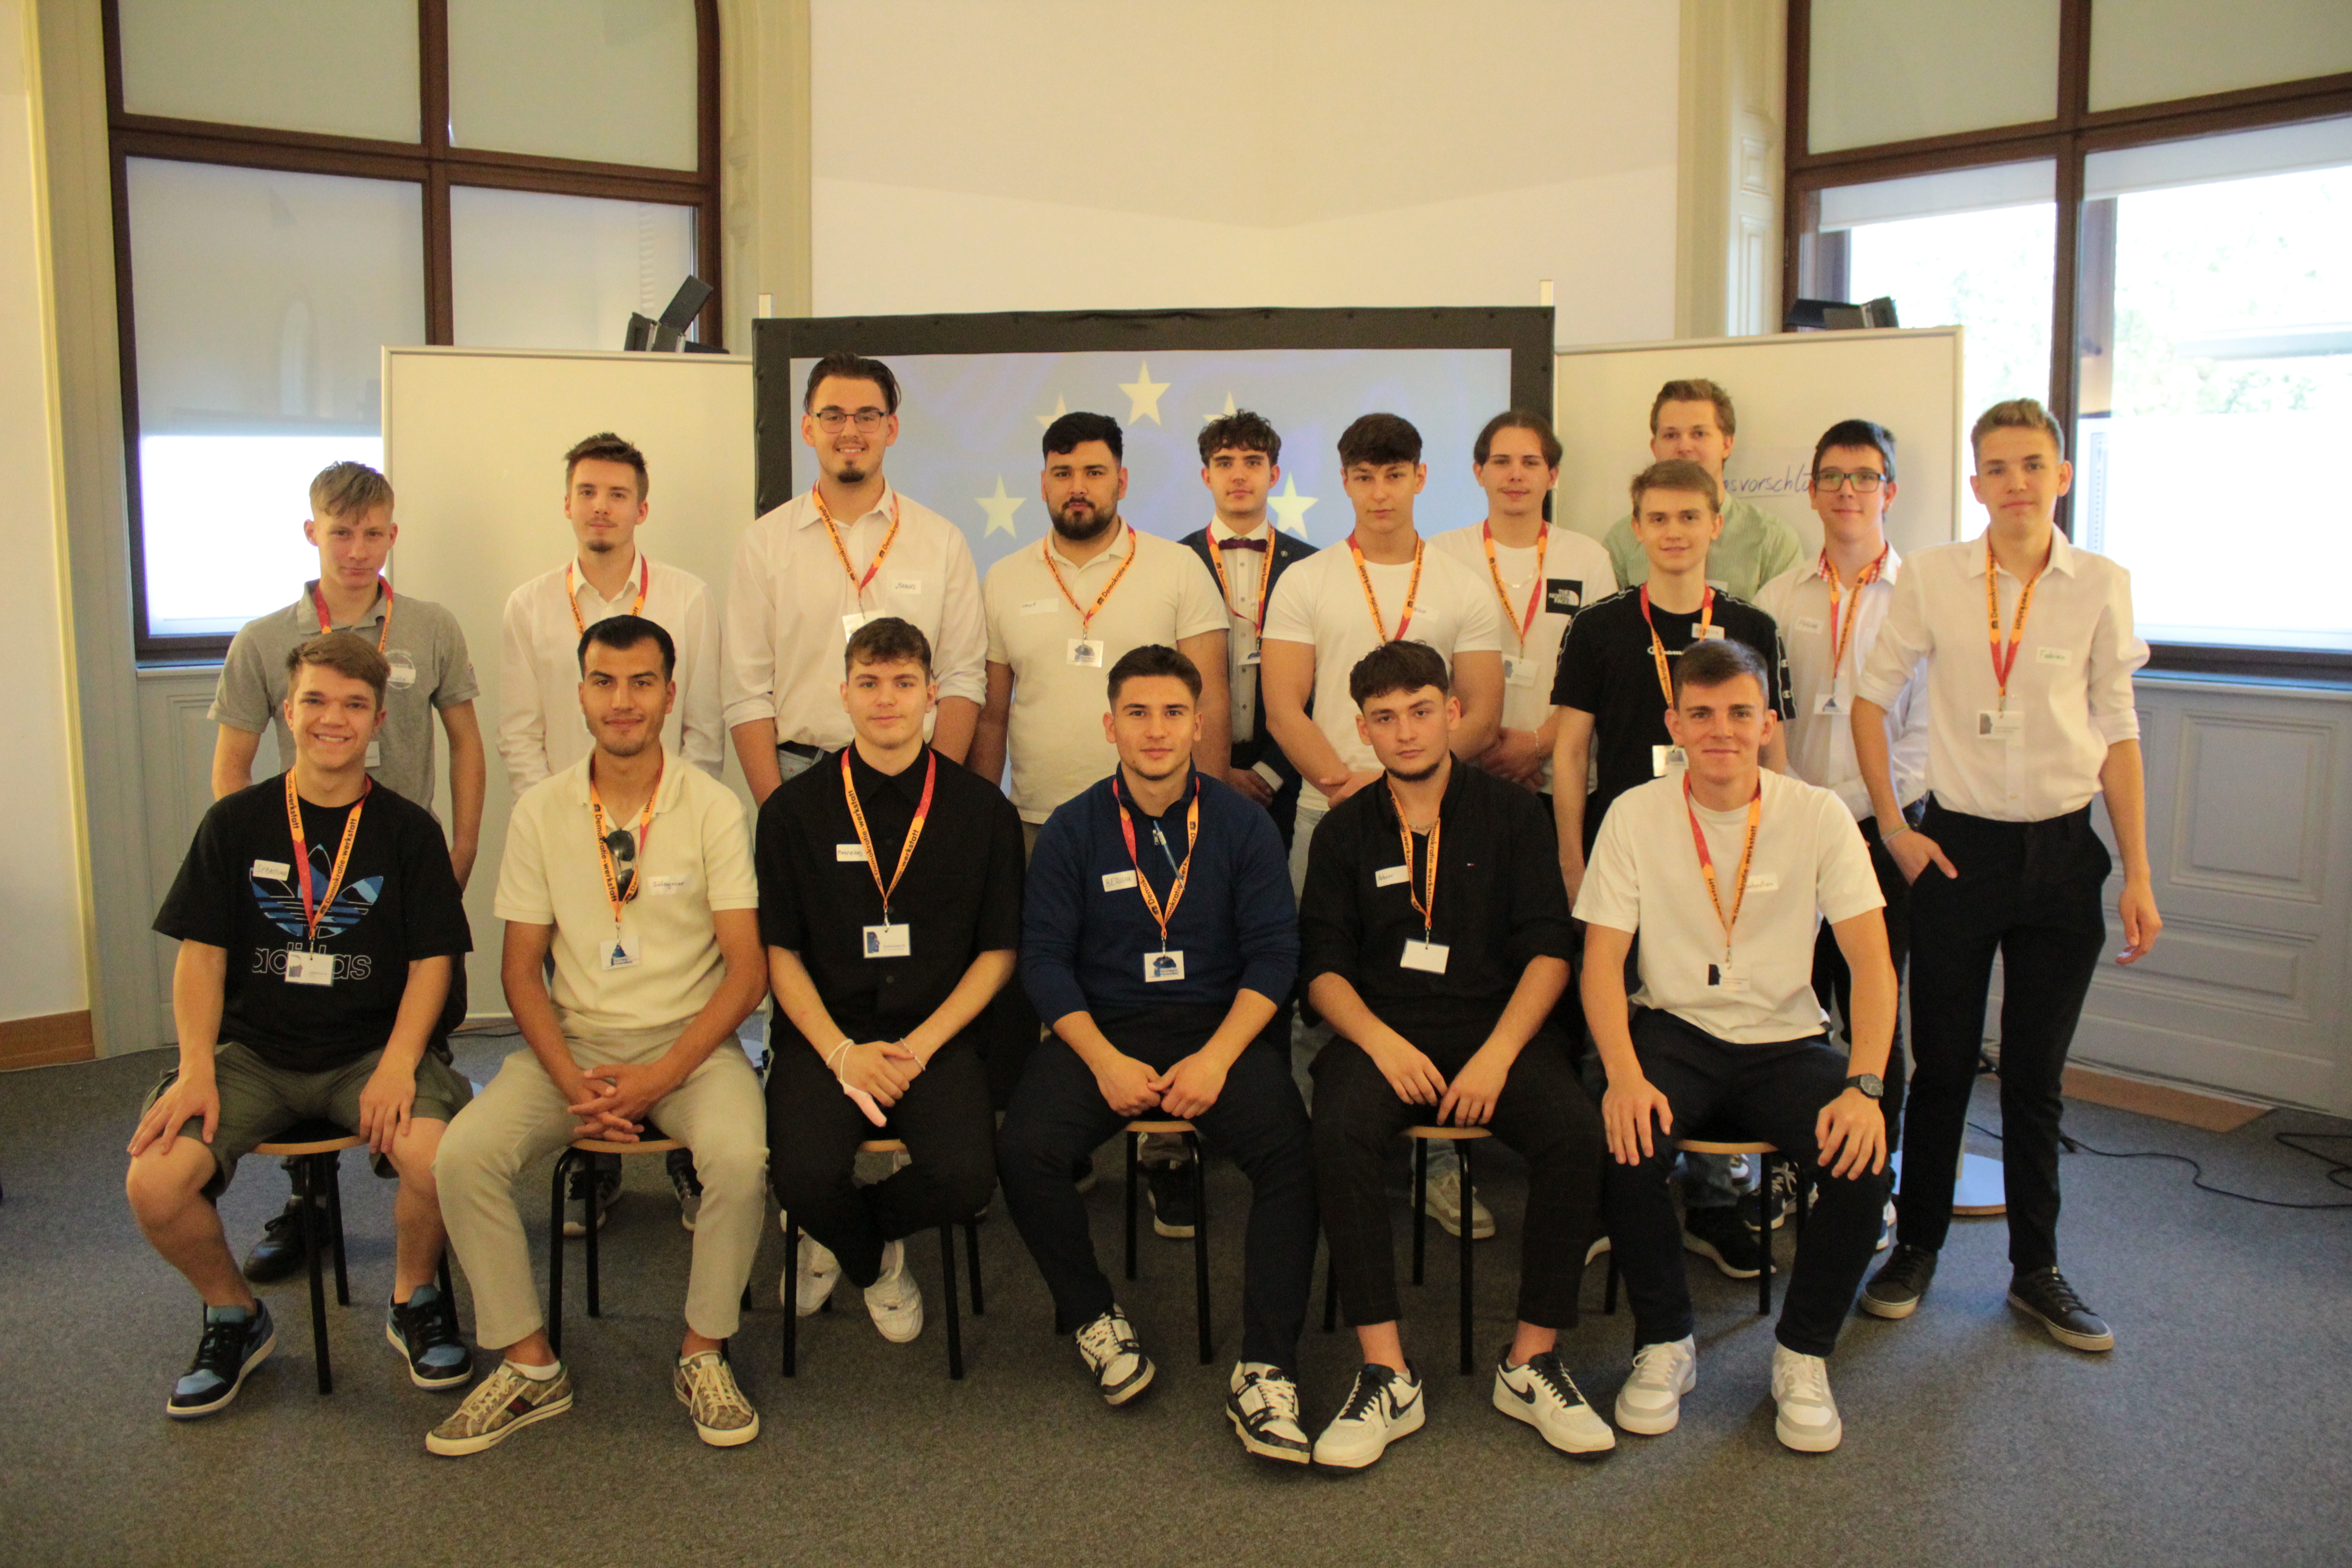 Gruppenfoto der Klasse 3S8 von der Landesberufsschule Zistersdorf